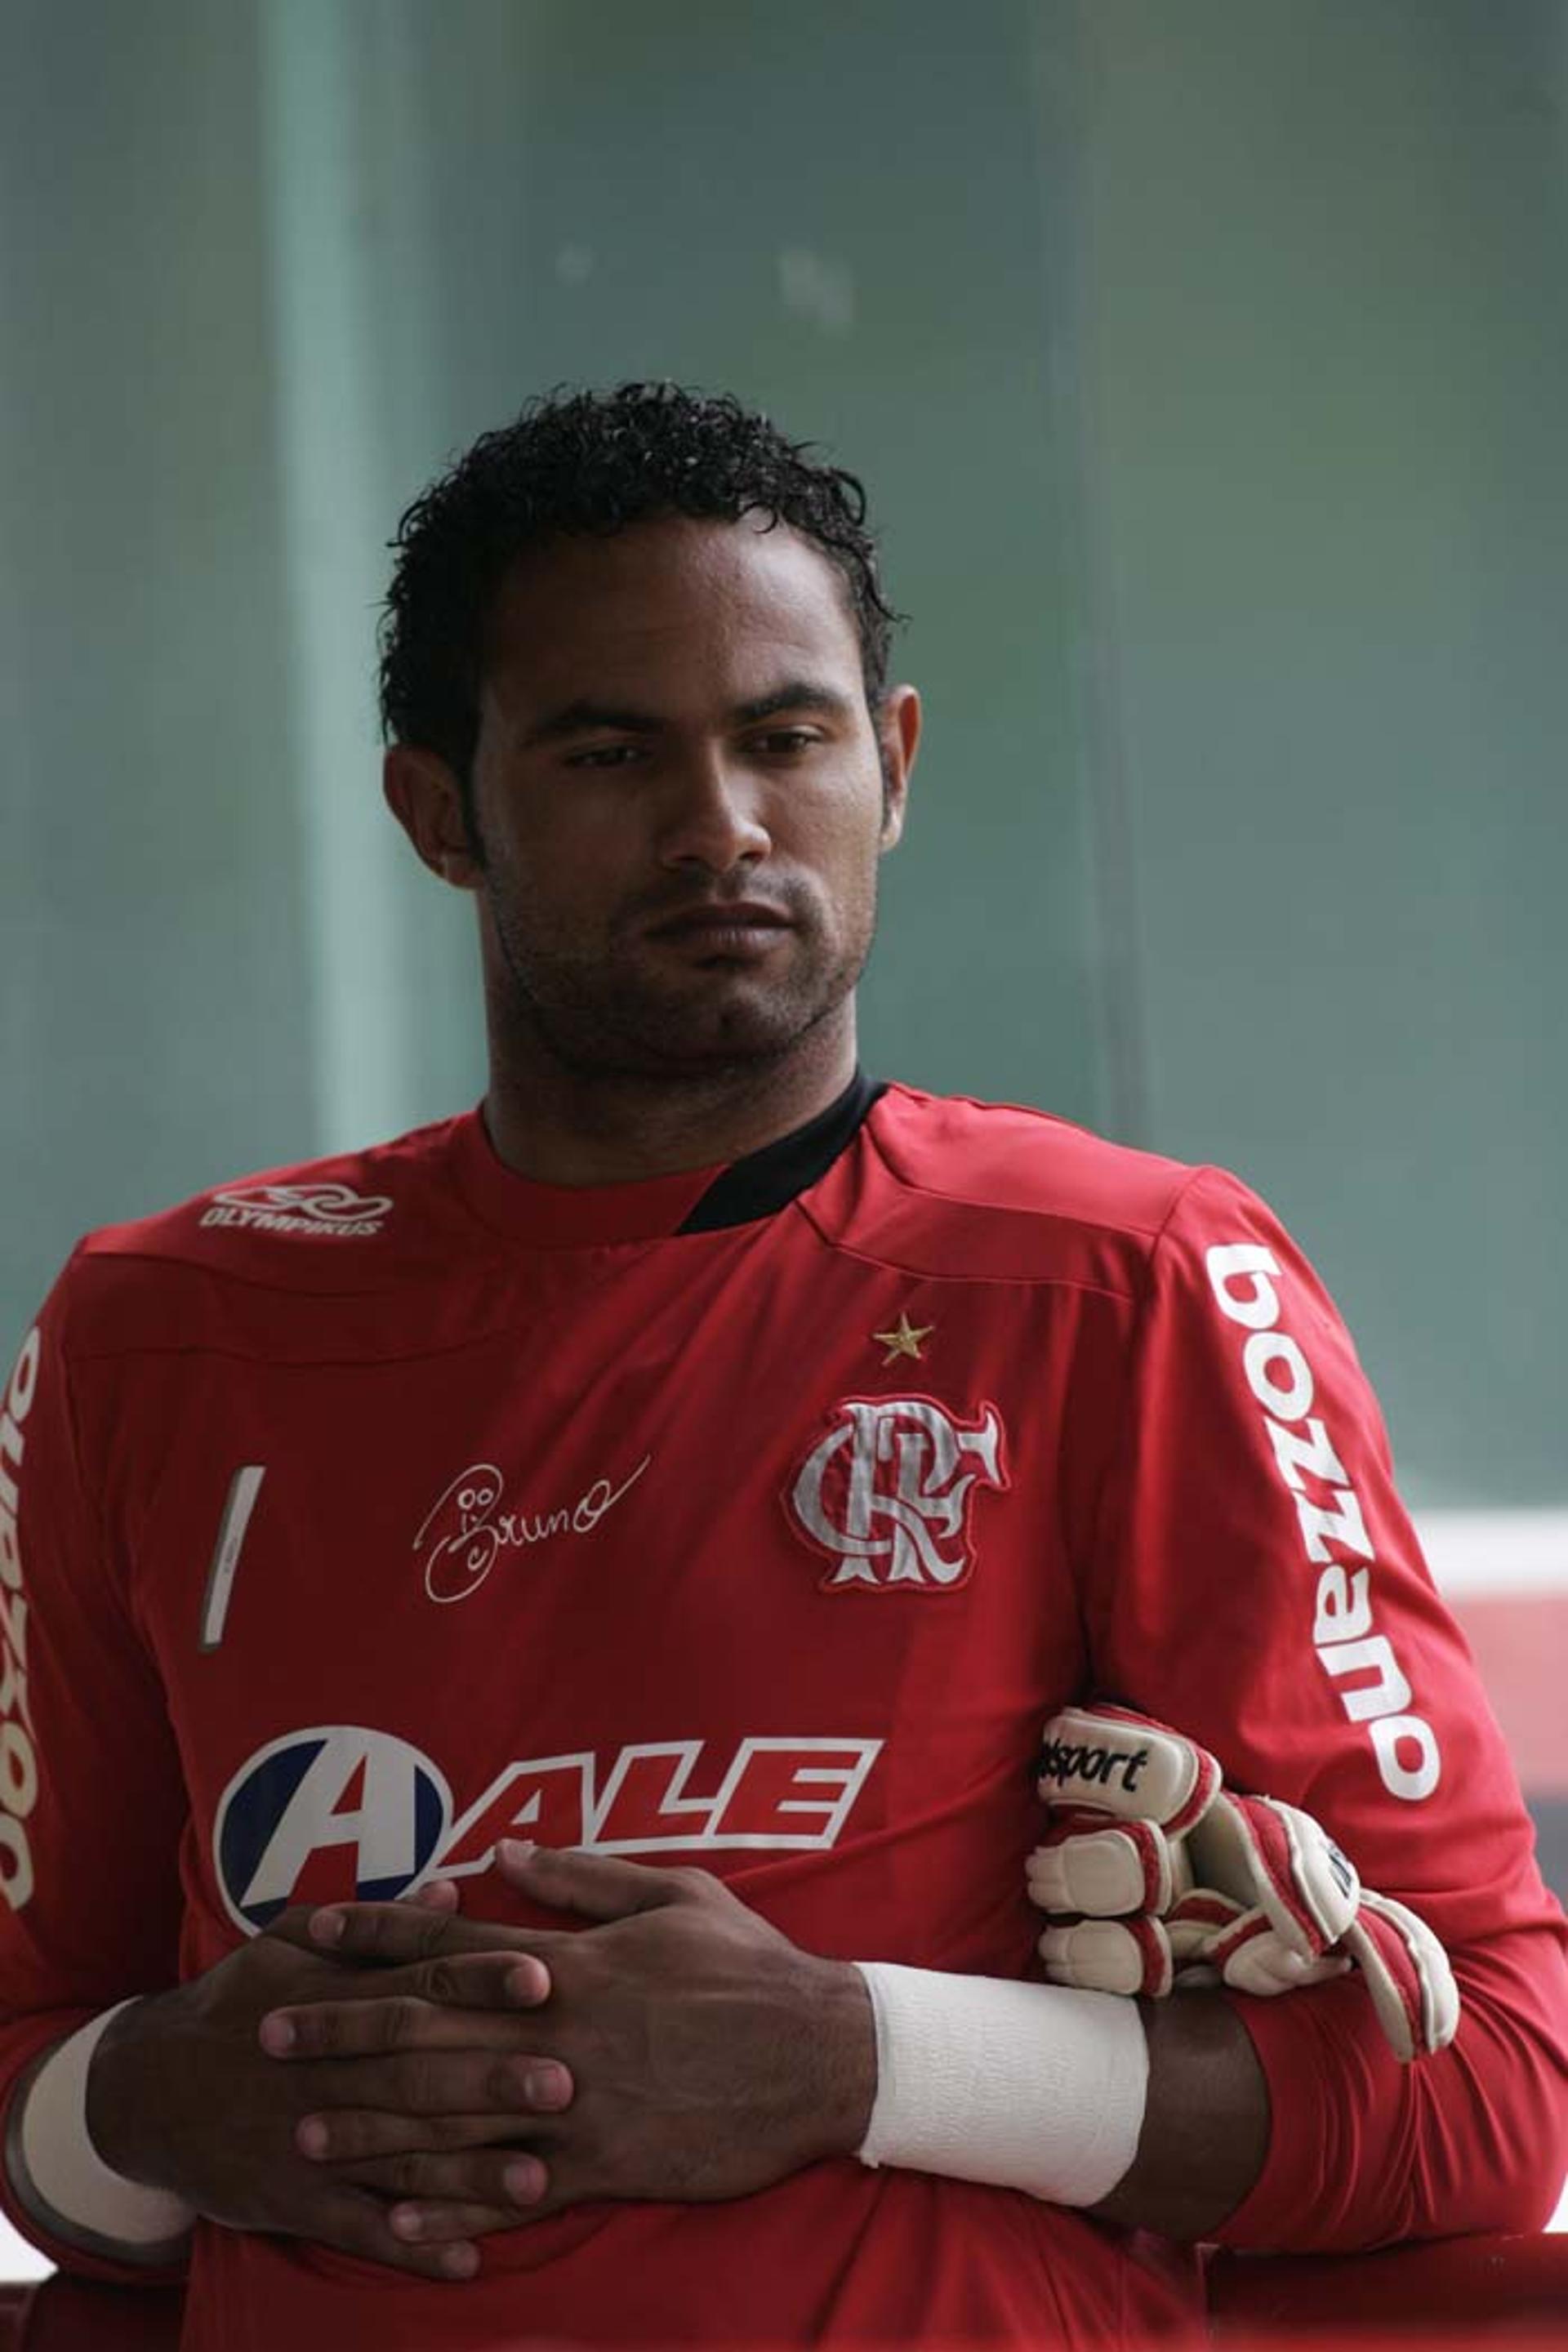 No gol, Bruno, condenado a 22 anos de prisão pelo assassinato de Eliza Samúdio em 2010. O goleiro saiu da cadeia em 2017 e chegou a atuar pelo Boa Esporte, mas logo depois foi mandado de volta à prisão.